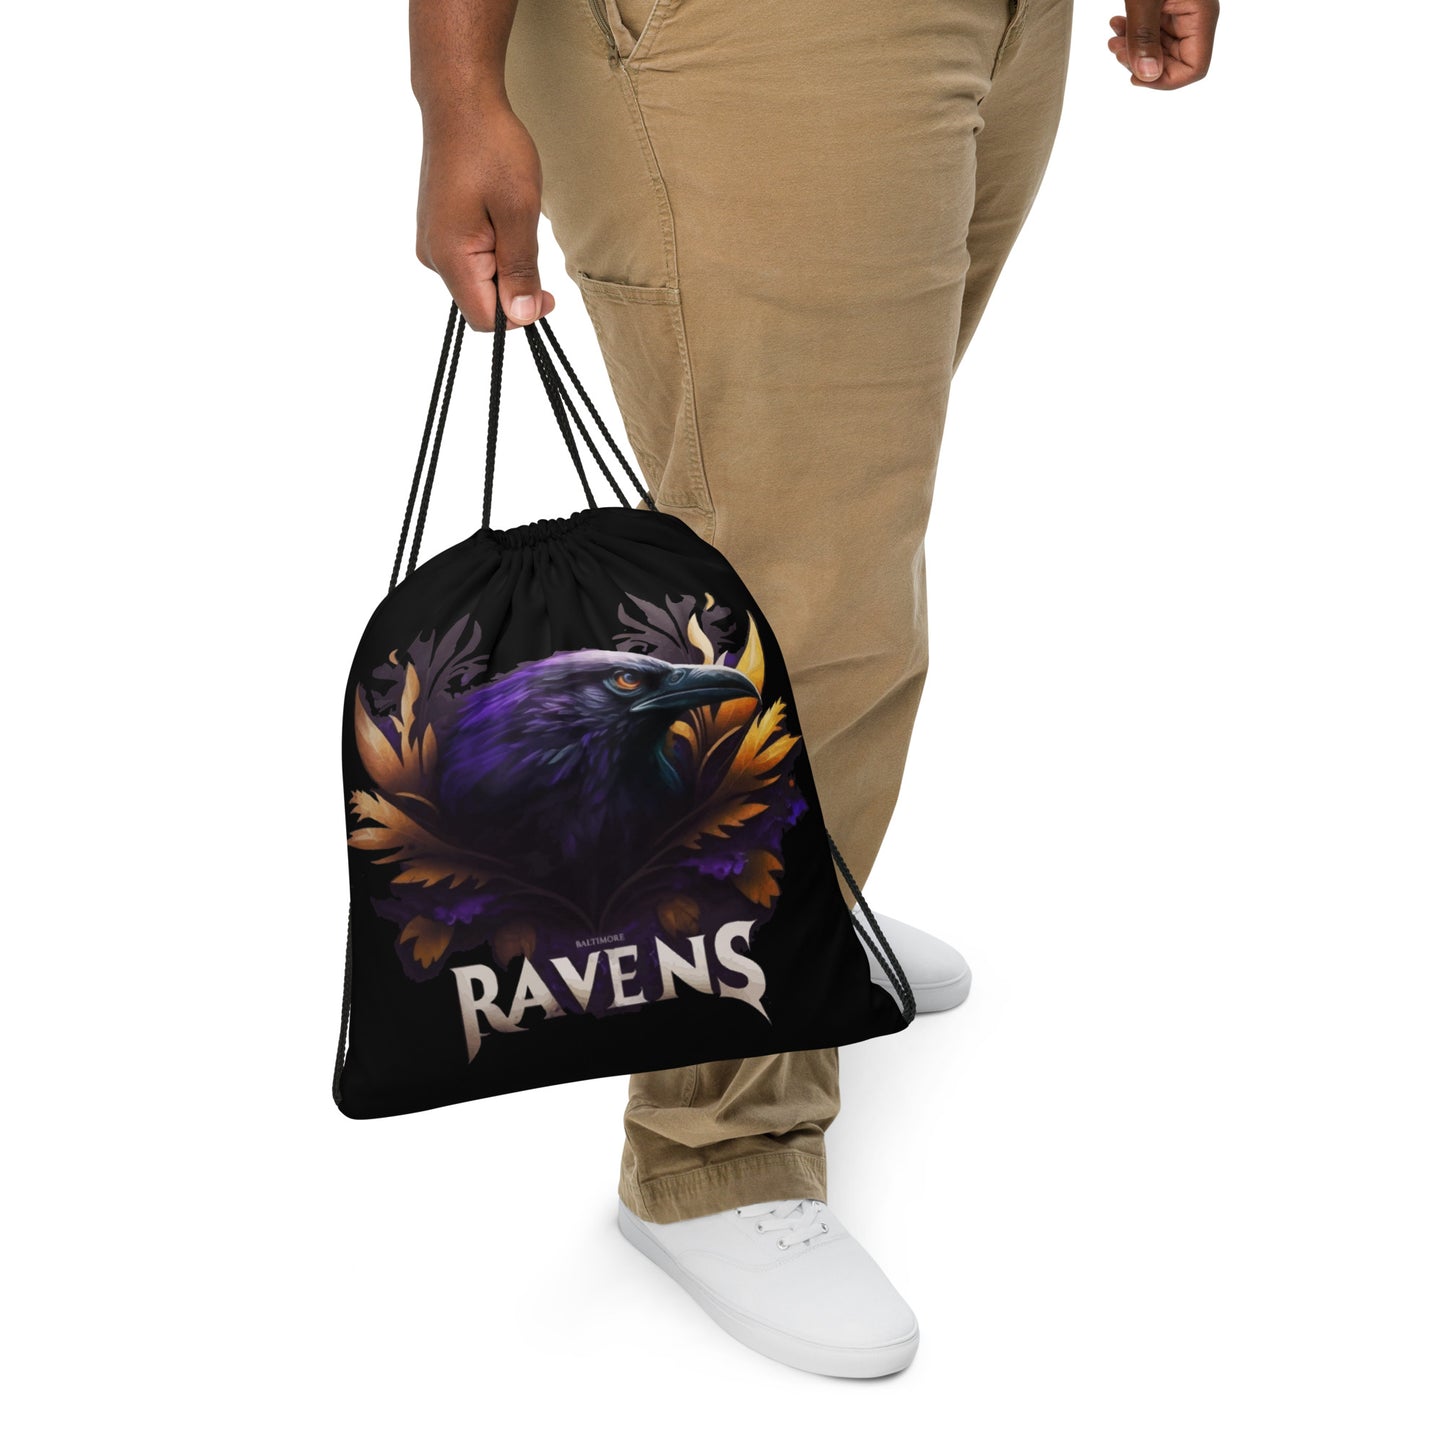 Ravens Drawstring Bag